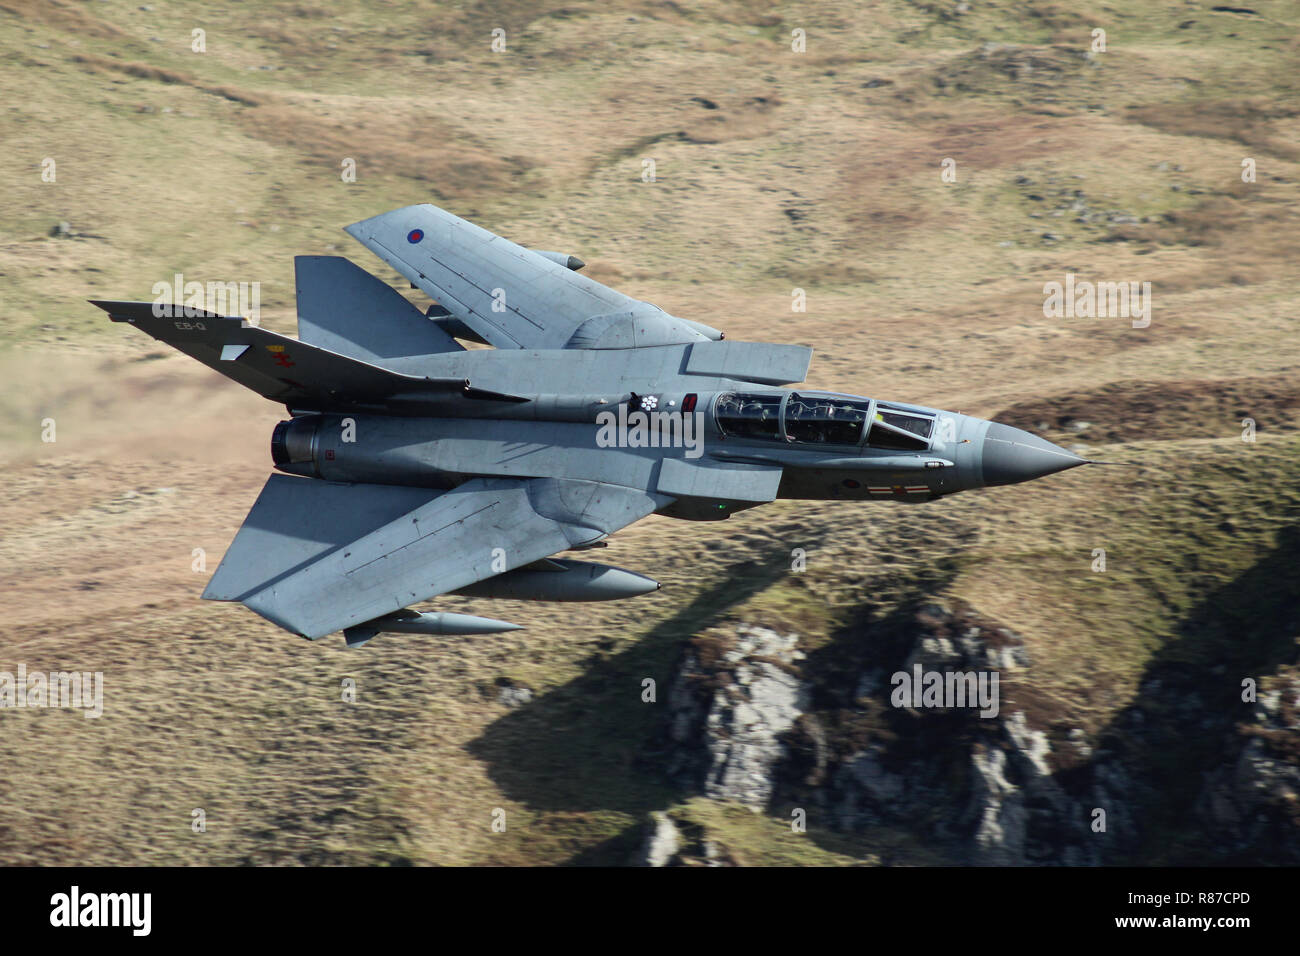 RAF Tornado GR4, 41 Geschwader, auf einer niedrigen Ebene Ausbildung Flug in die mach loop Bereich von Gwynedd, Wales, Vereinigtes Königreich. Stockfoto